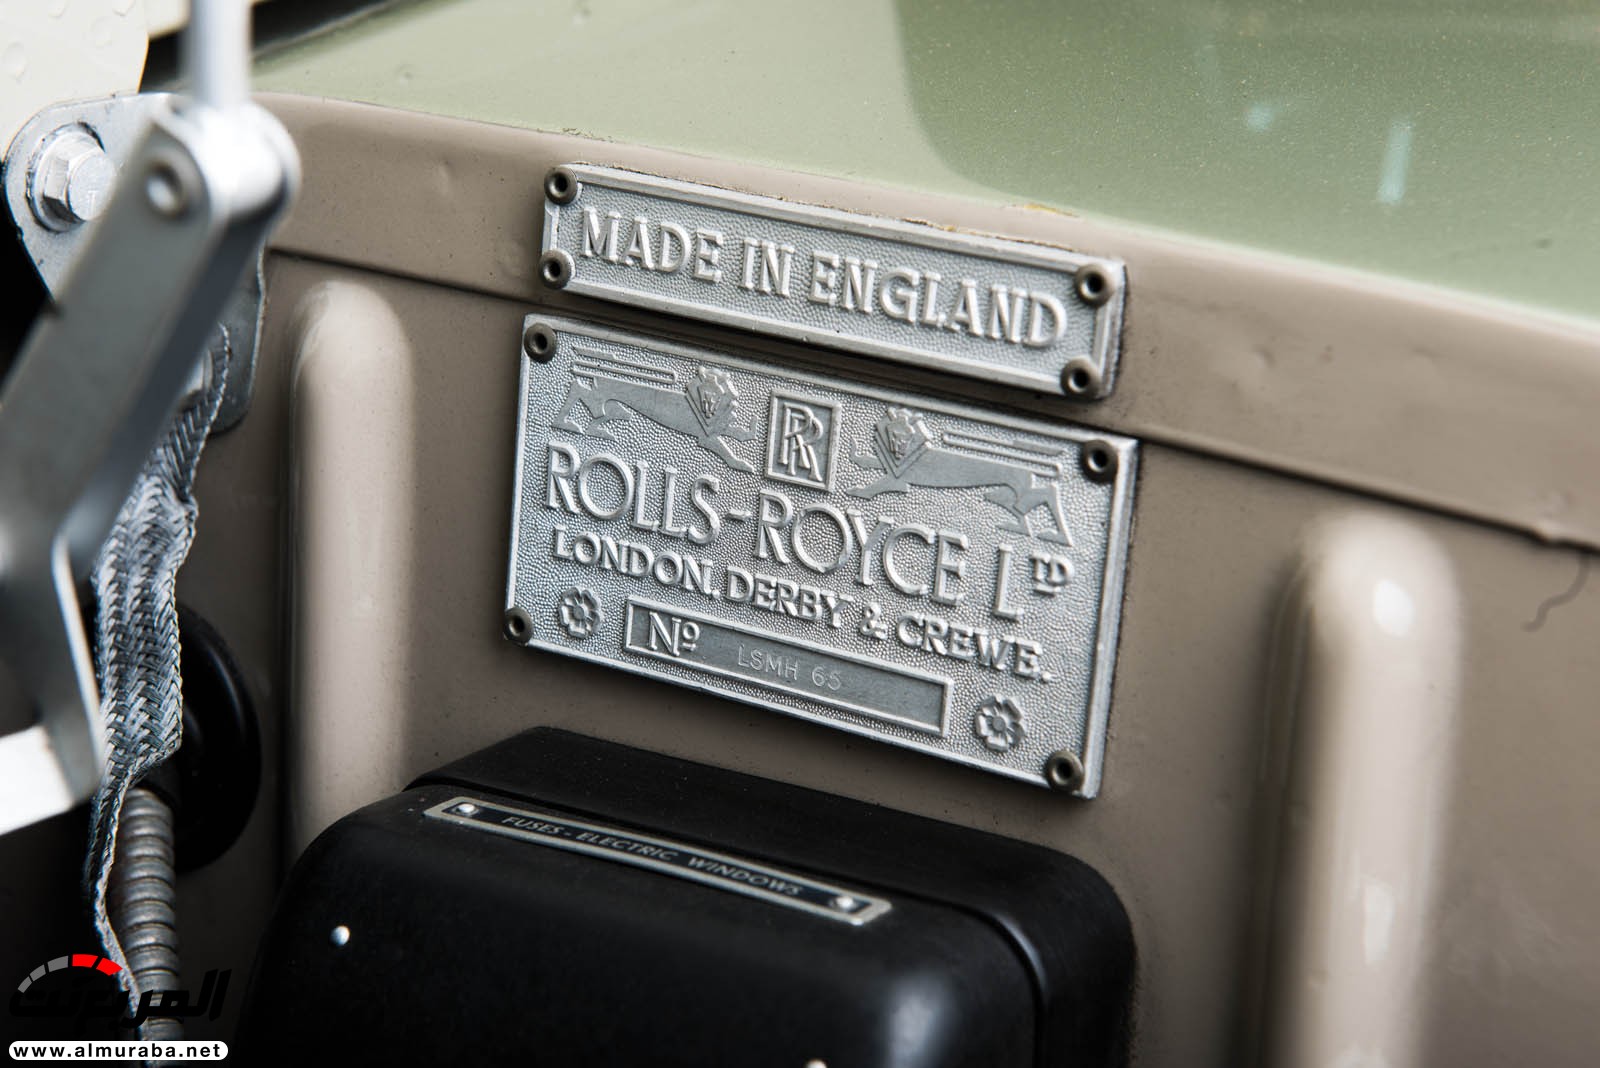 "رولز رويس" سيلفر كلاود 1959 ذات هيكلة الواجن تتوجه لتباع في مزاد عالمي Rolls-Royce Silver Cloud 89